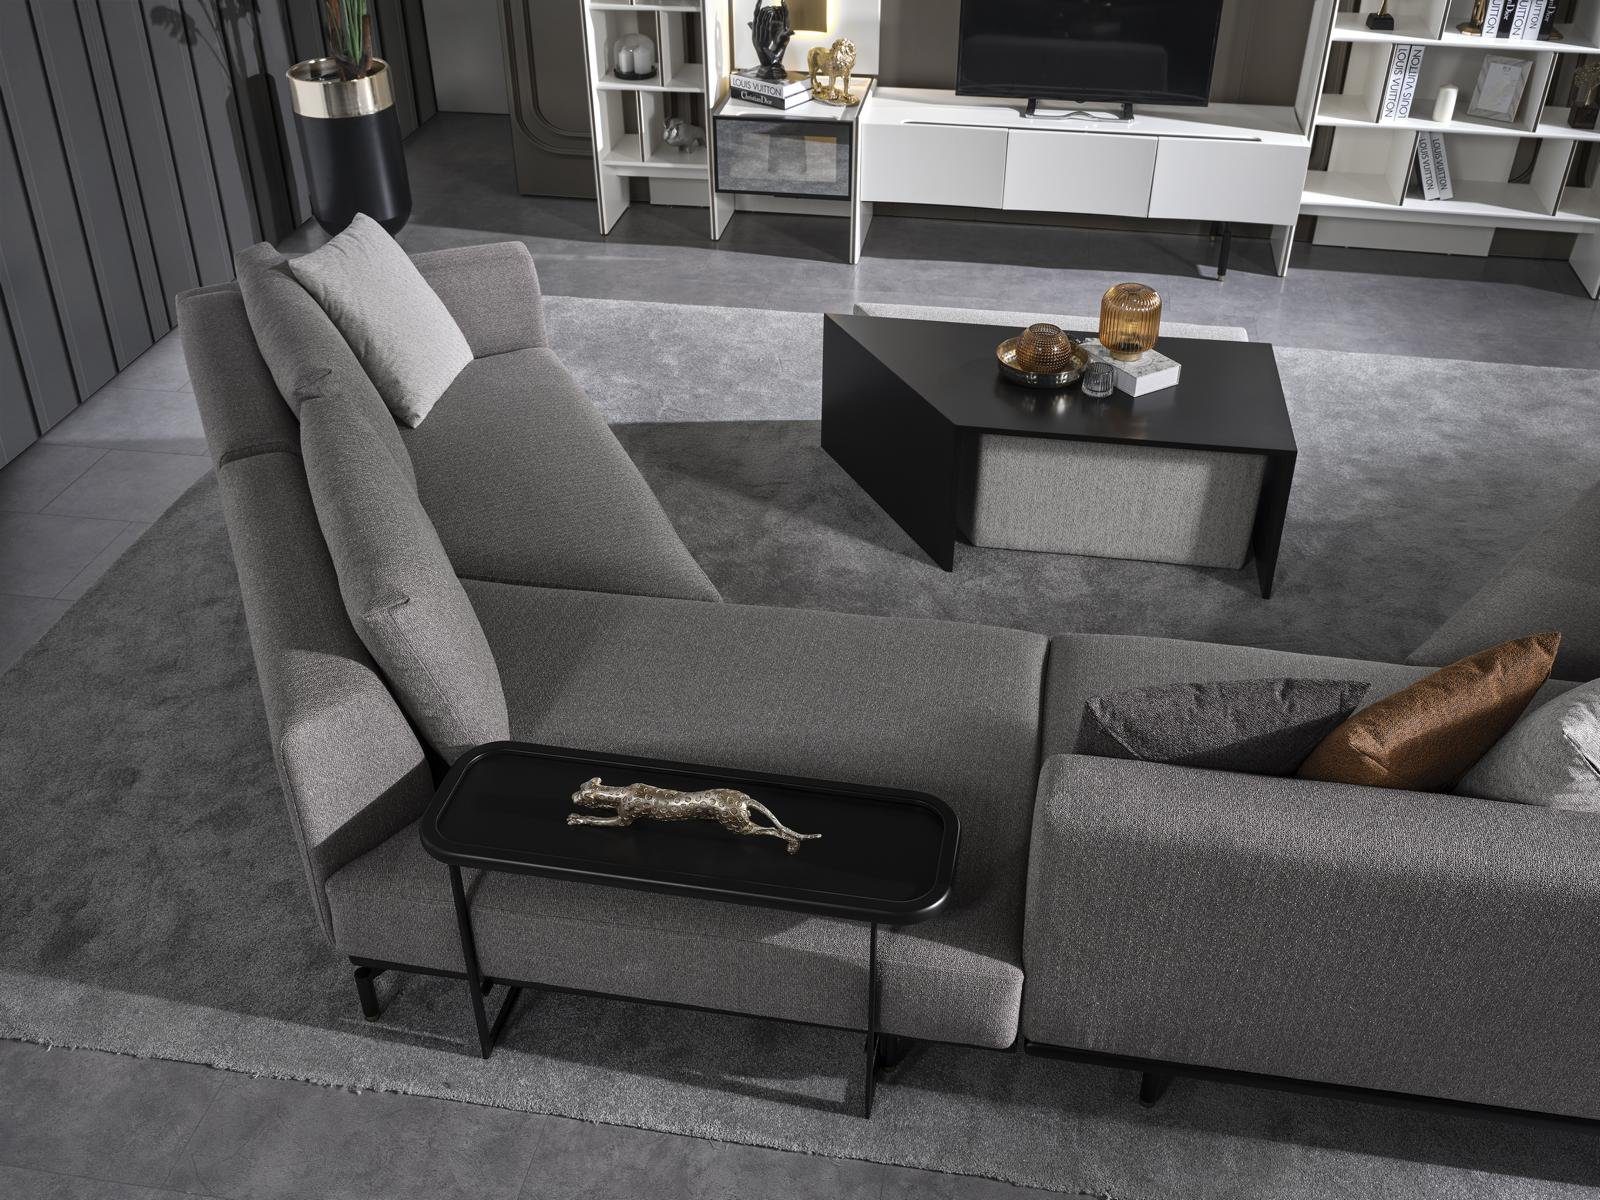 JVmoebel Ecksofa Ecksofa Neu Luxus Couch grau Wohnzimmer Textil Design U-Form Modern